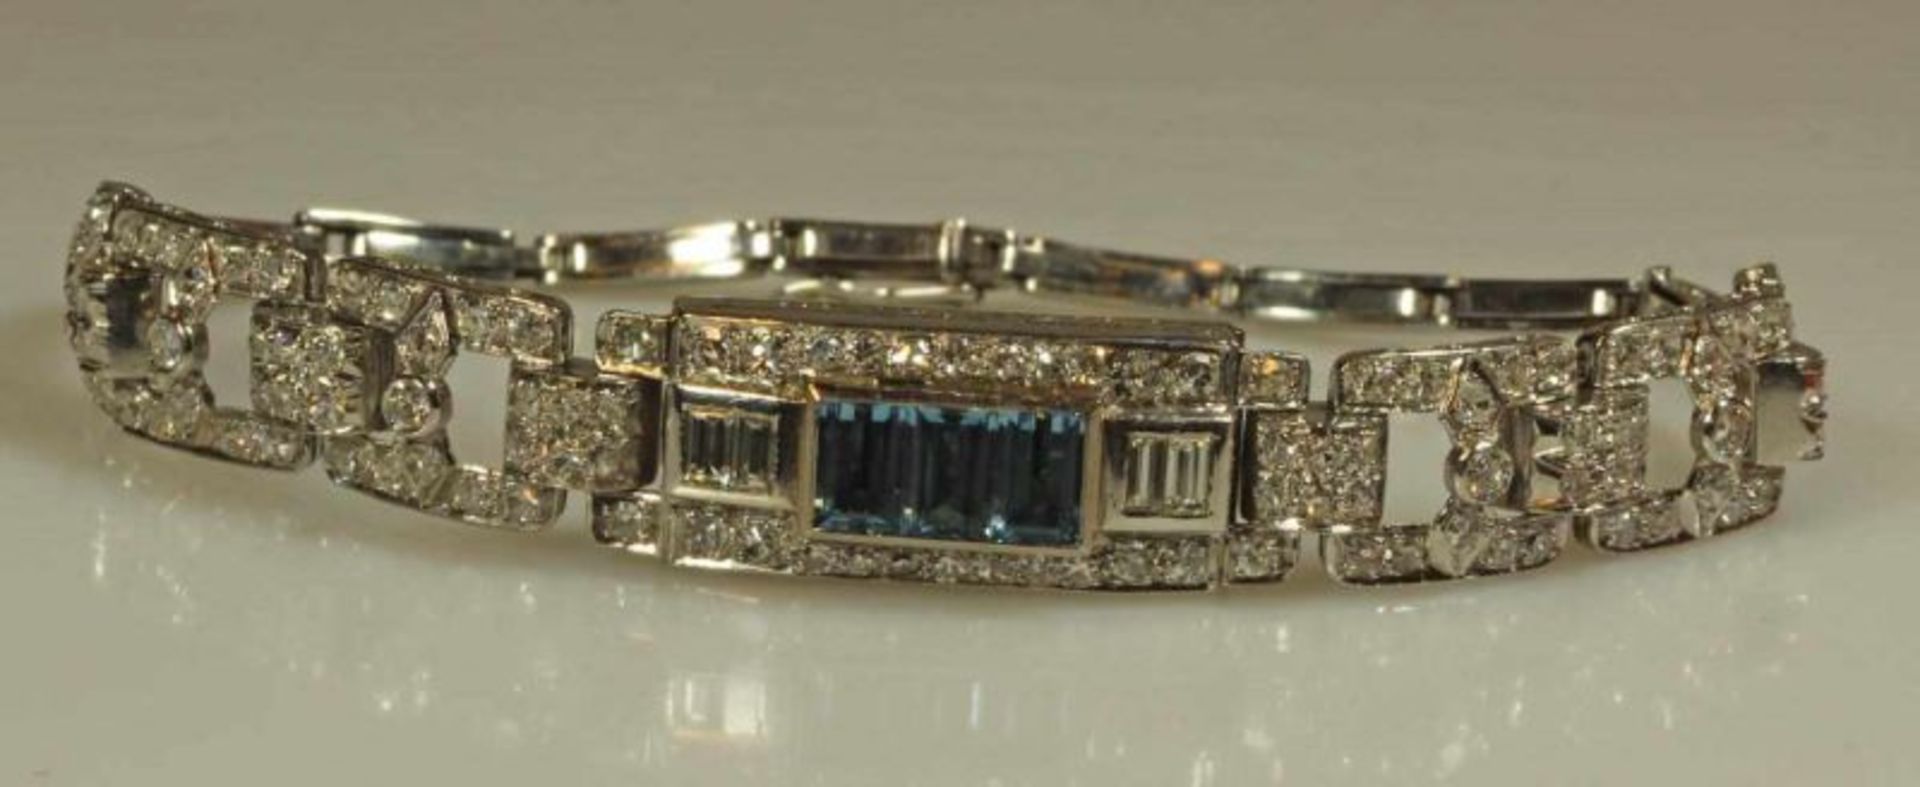 Armband (ehemals Uhr), Art Deco, um 1930, Platin 950, 8 Brillanten und 113 Diamanten, zus. ca. 2.